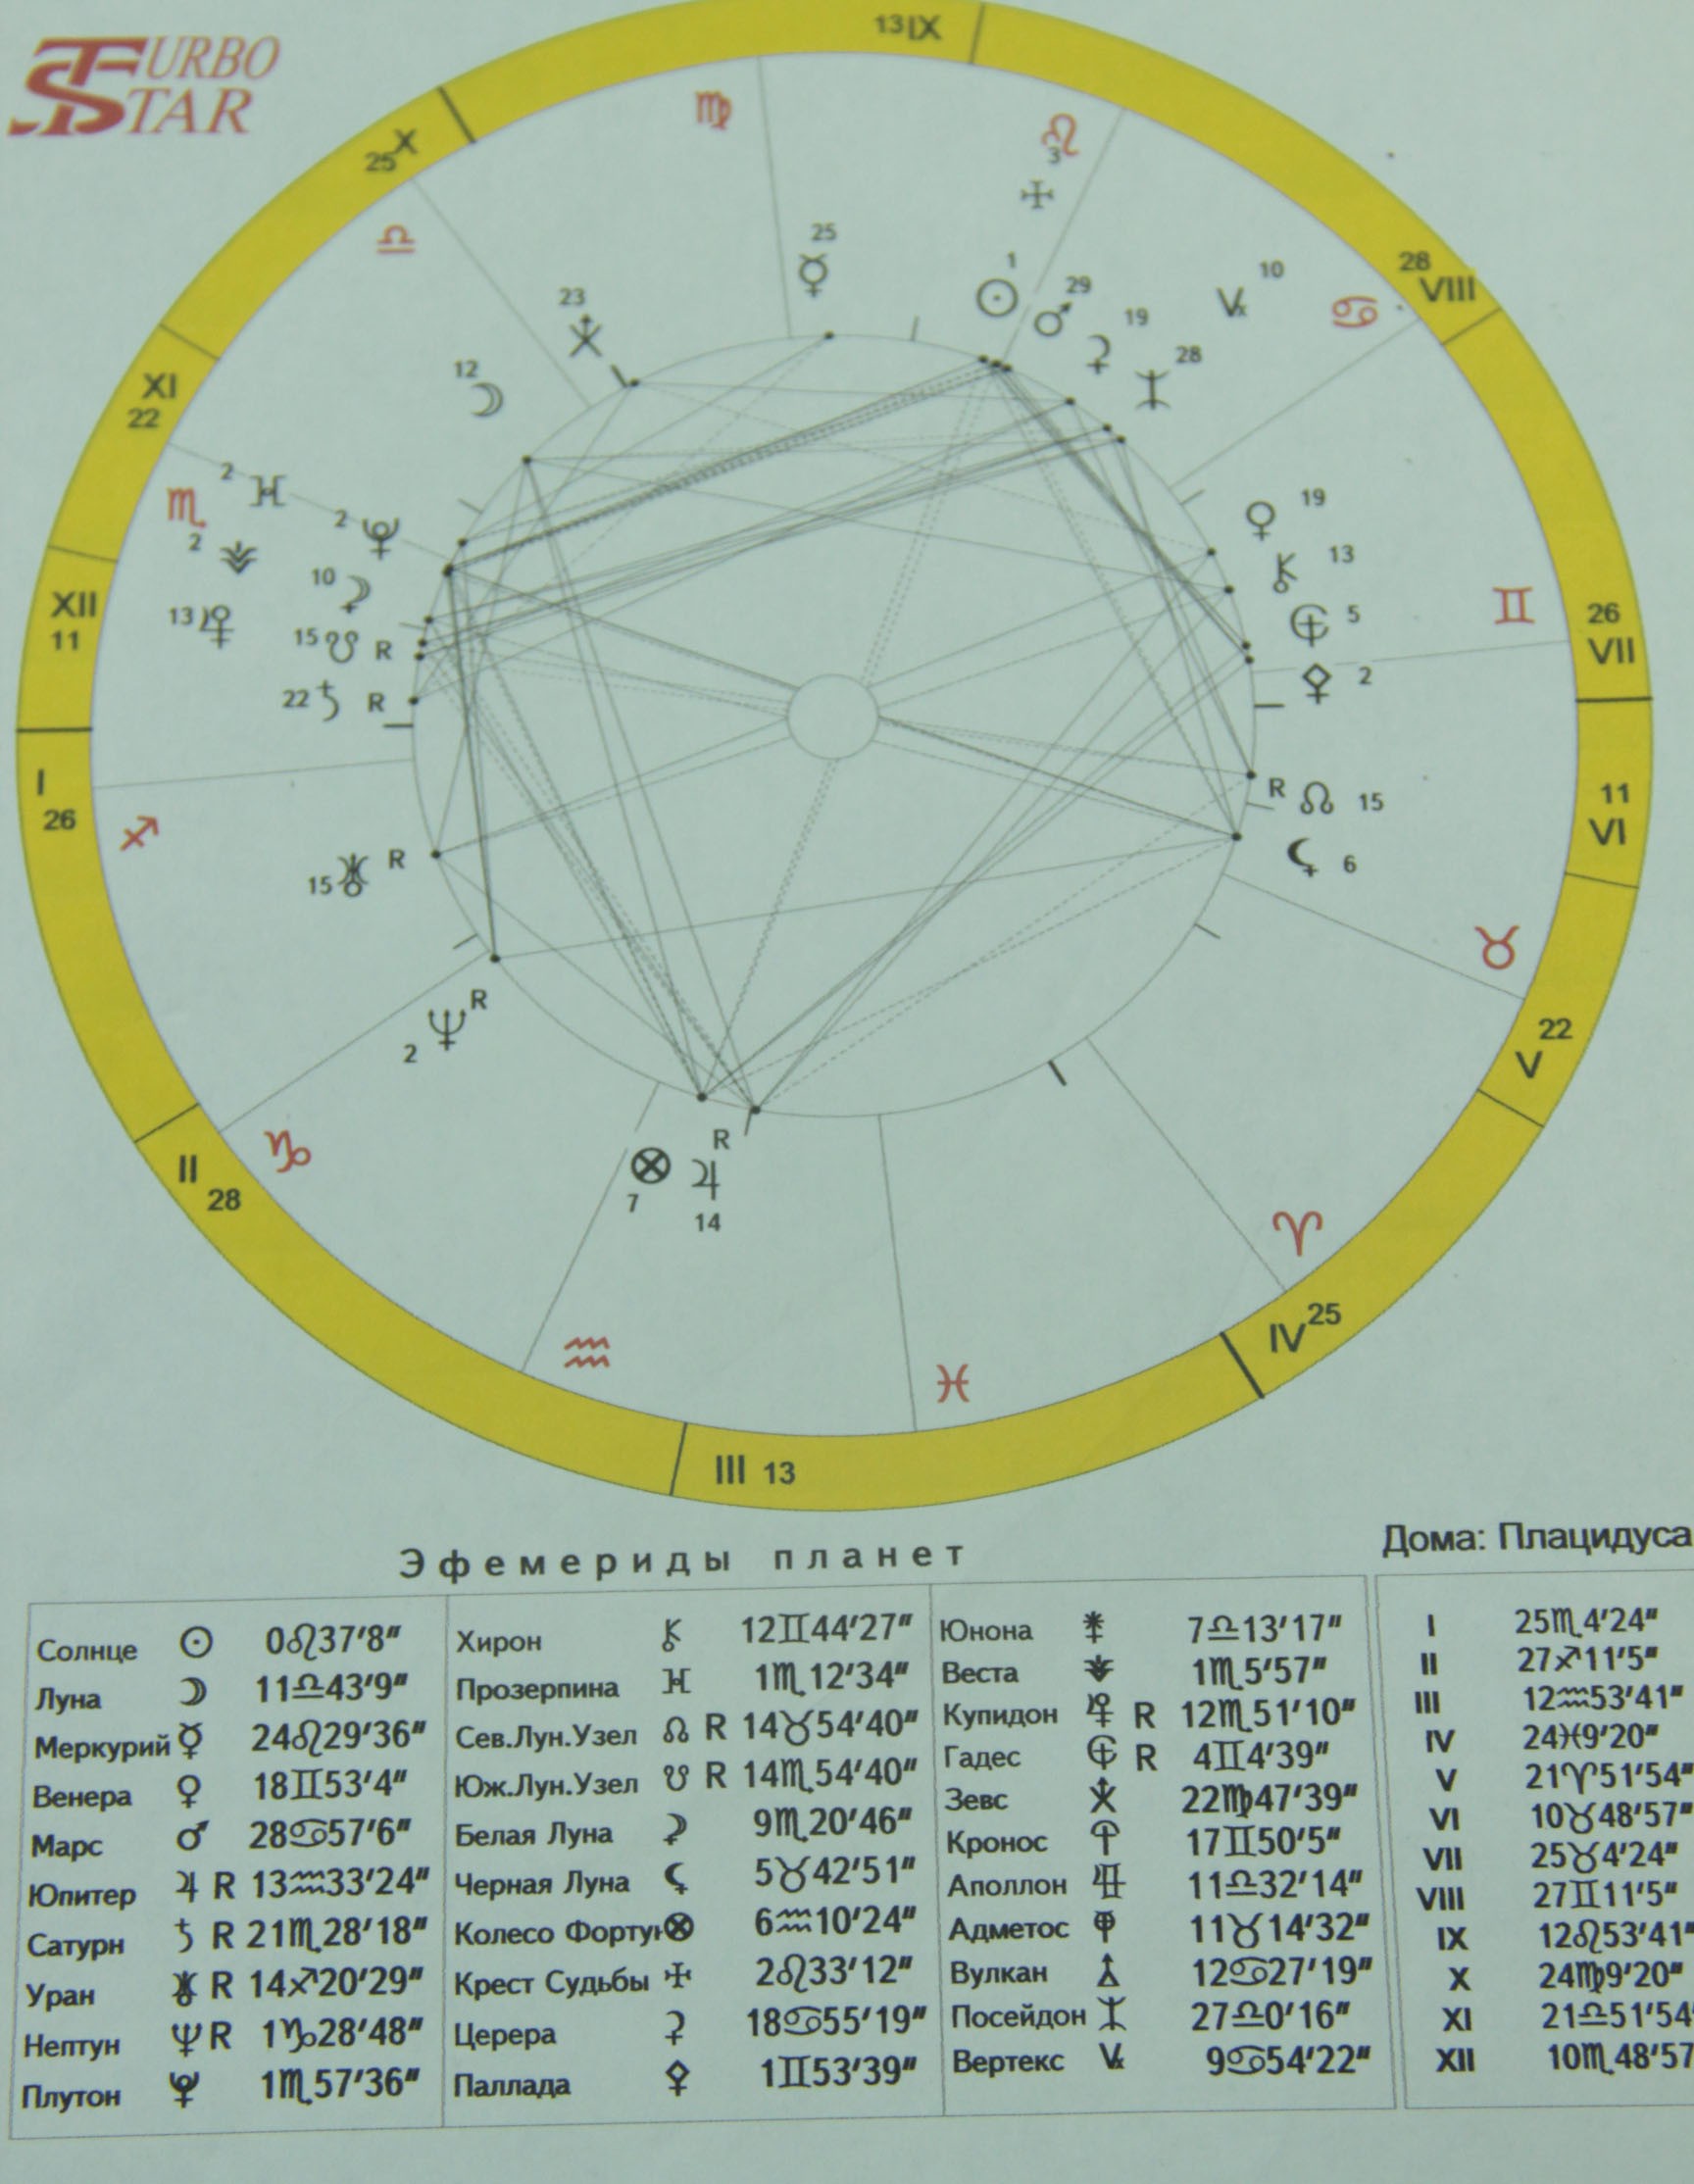 Тверской астролог рассказал о счастливых планетах и натальных картах